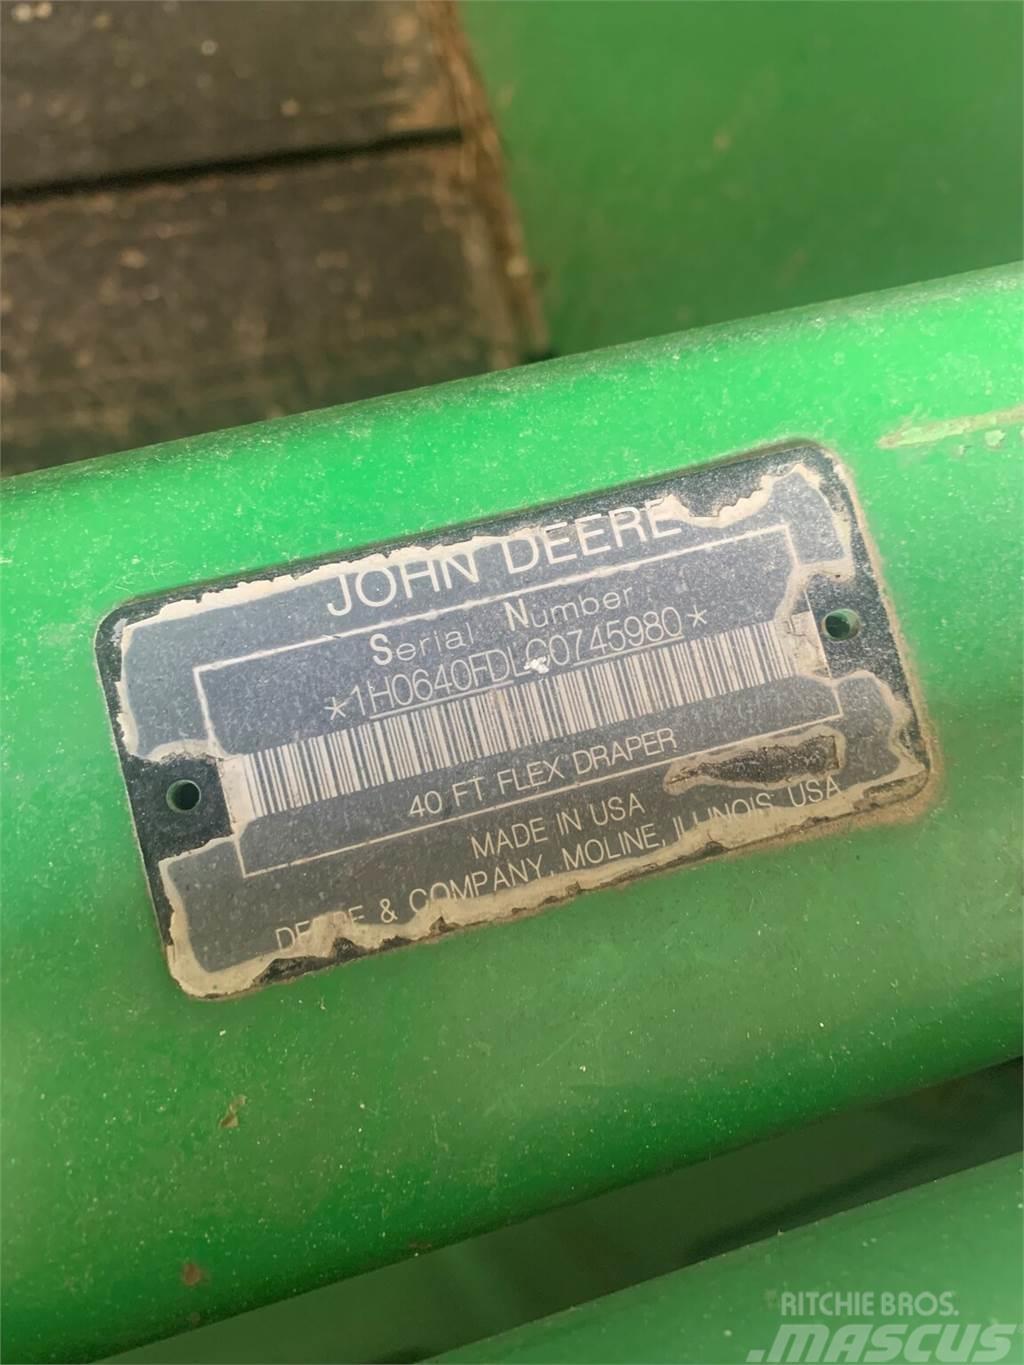 John Deere 640FD Příslušenství a náhradní díly ke kombajnům